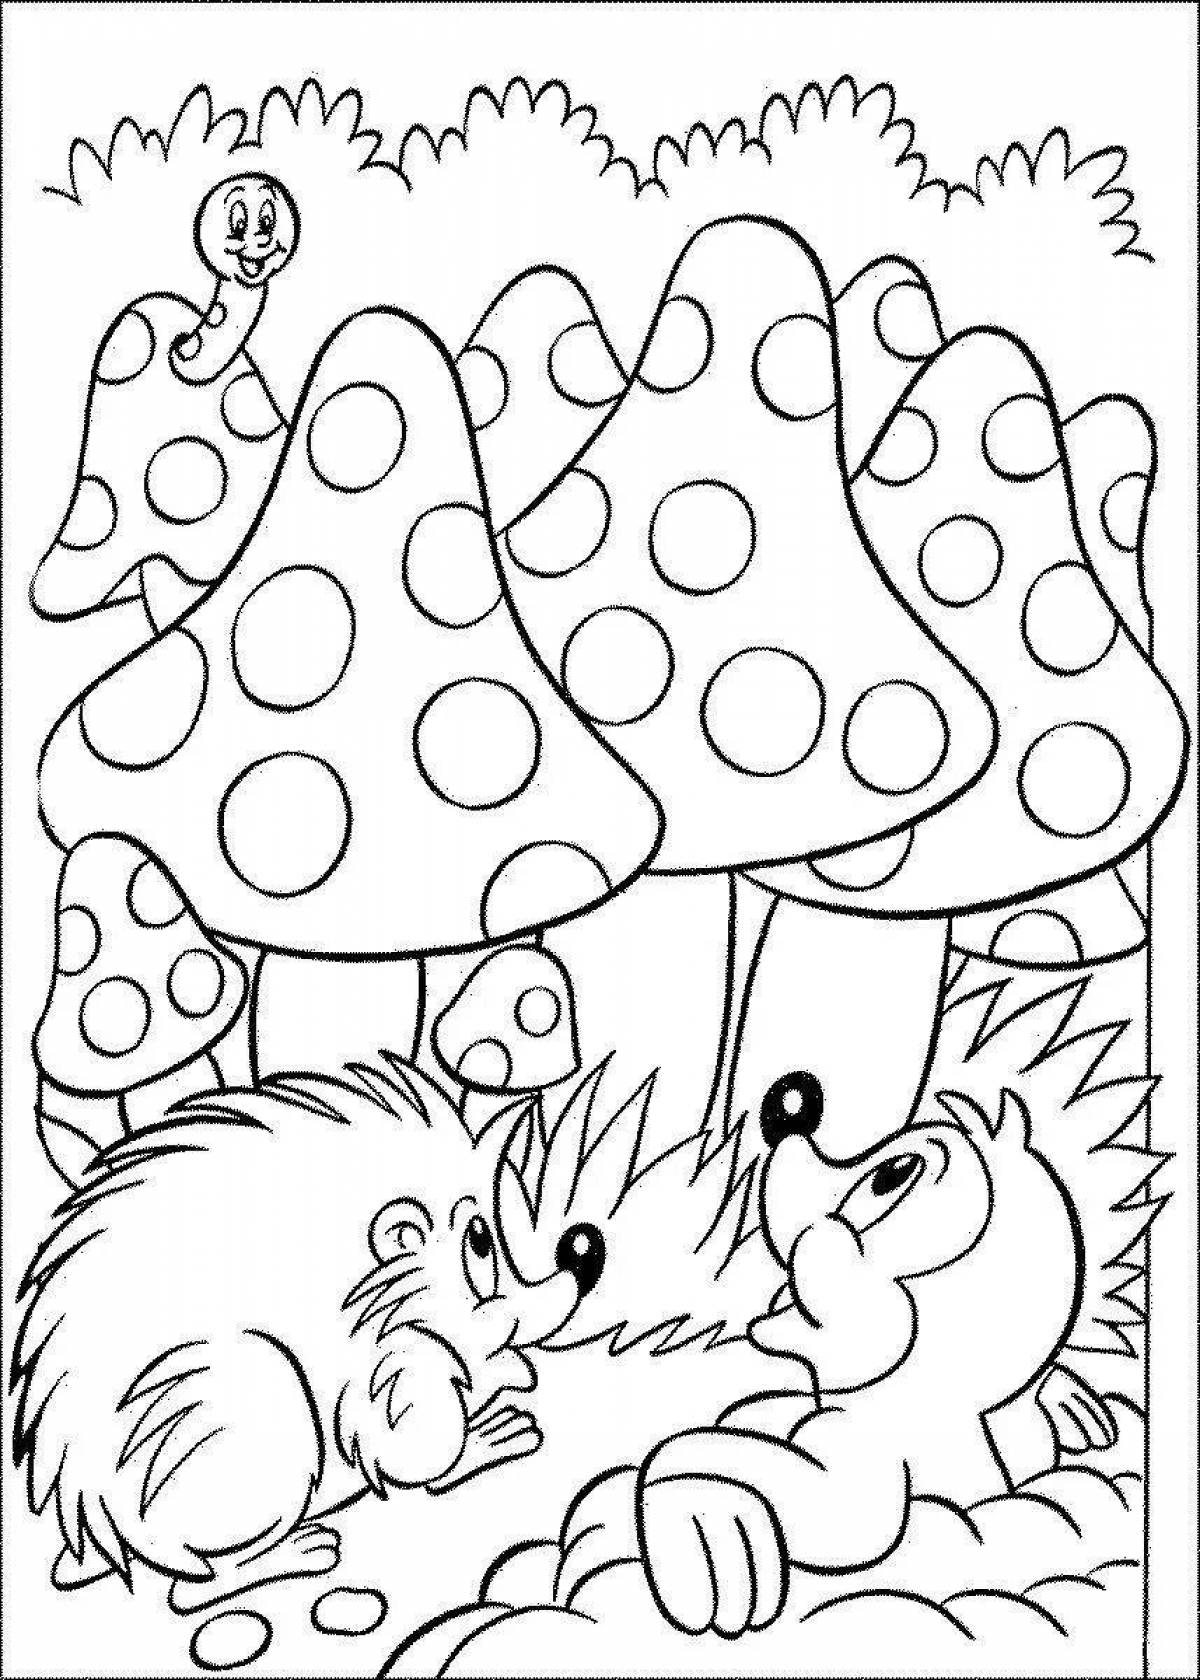 Coloring happy hedgehog by numbers